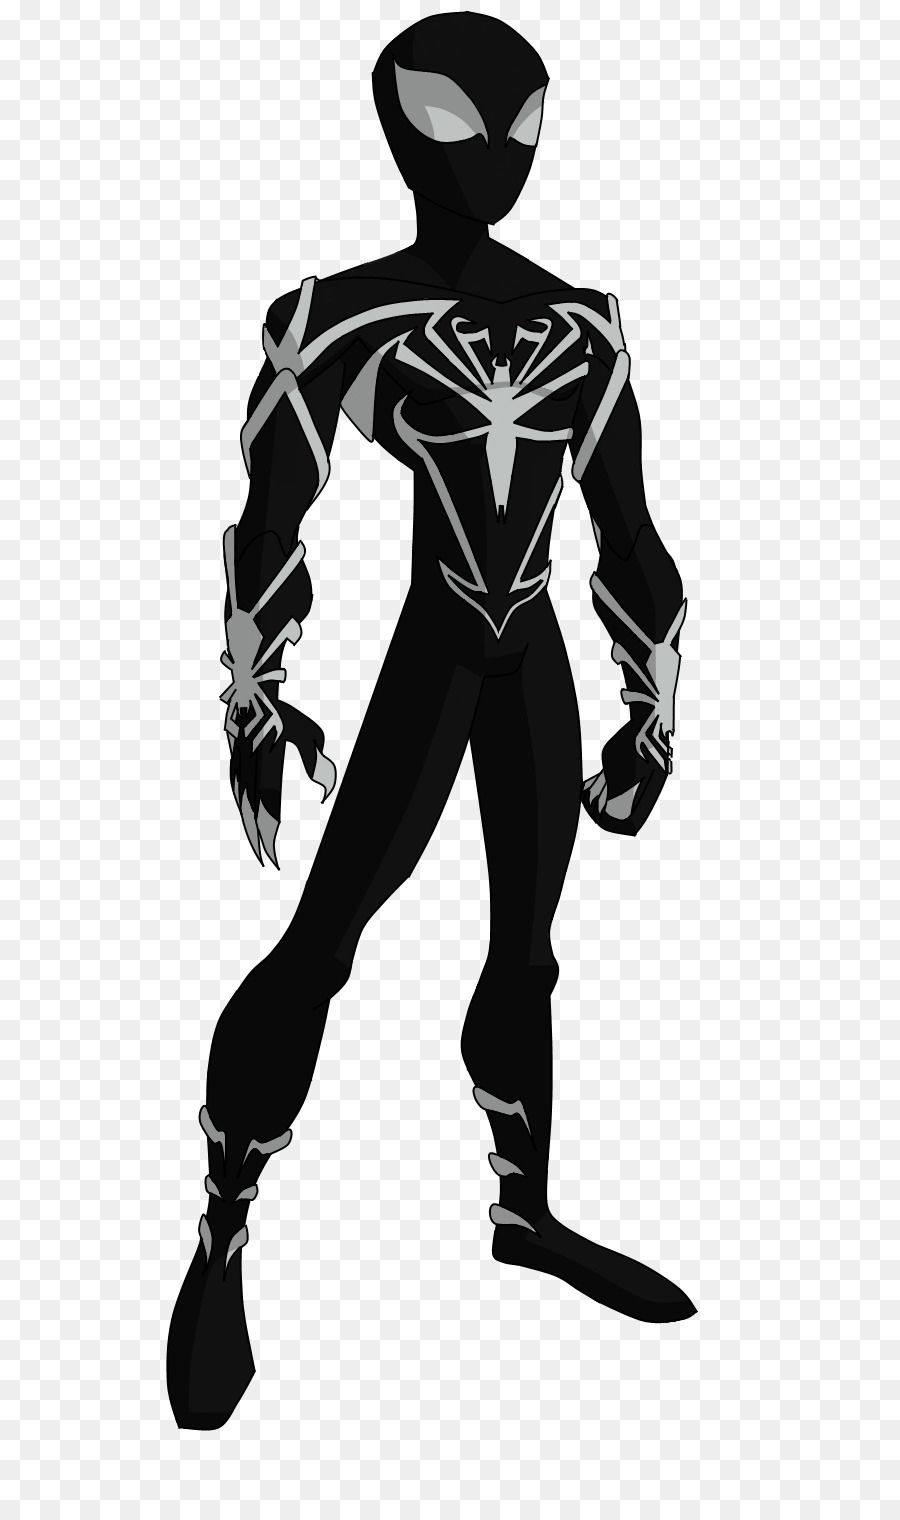 The Spectacular Spider-Man Venom Drawing Marvel Comics - spider webs png download - 600*1514 - Free Transparent Spiderman png Download.